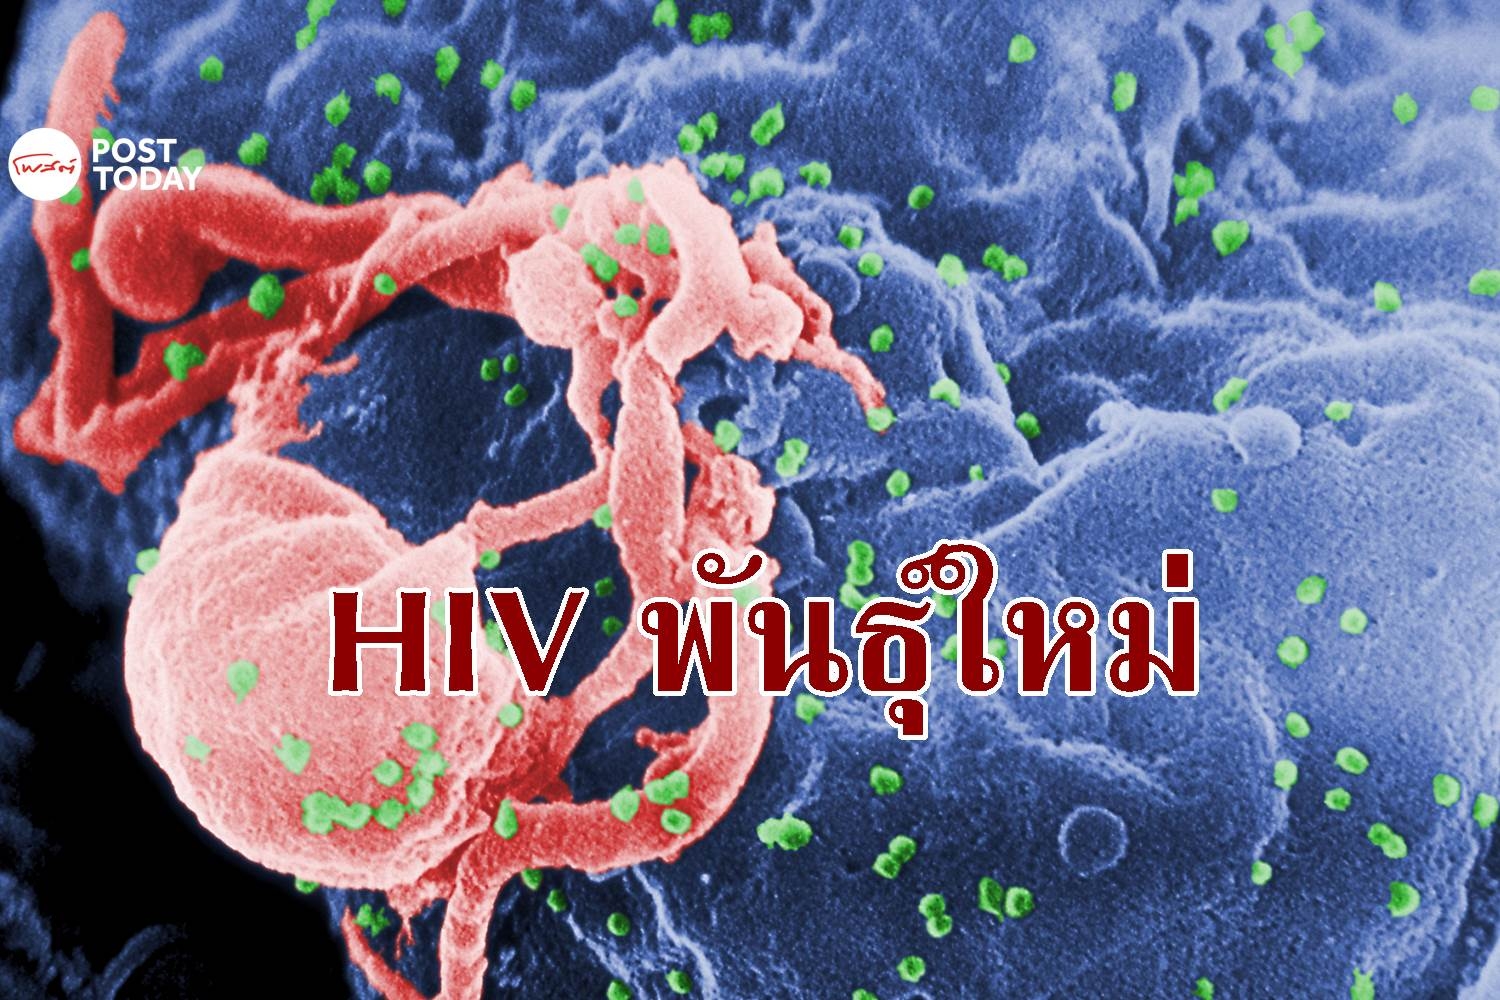 ออกซ์ฟอร์ดพบเชื้อ HIV สายพันธุ์ใหม่ในเนเธอร์แลนด์